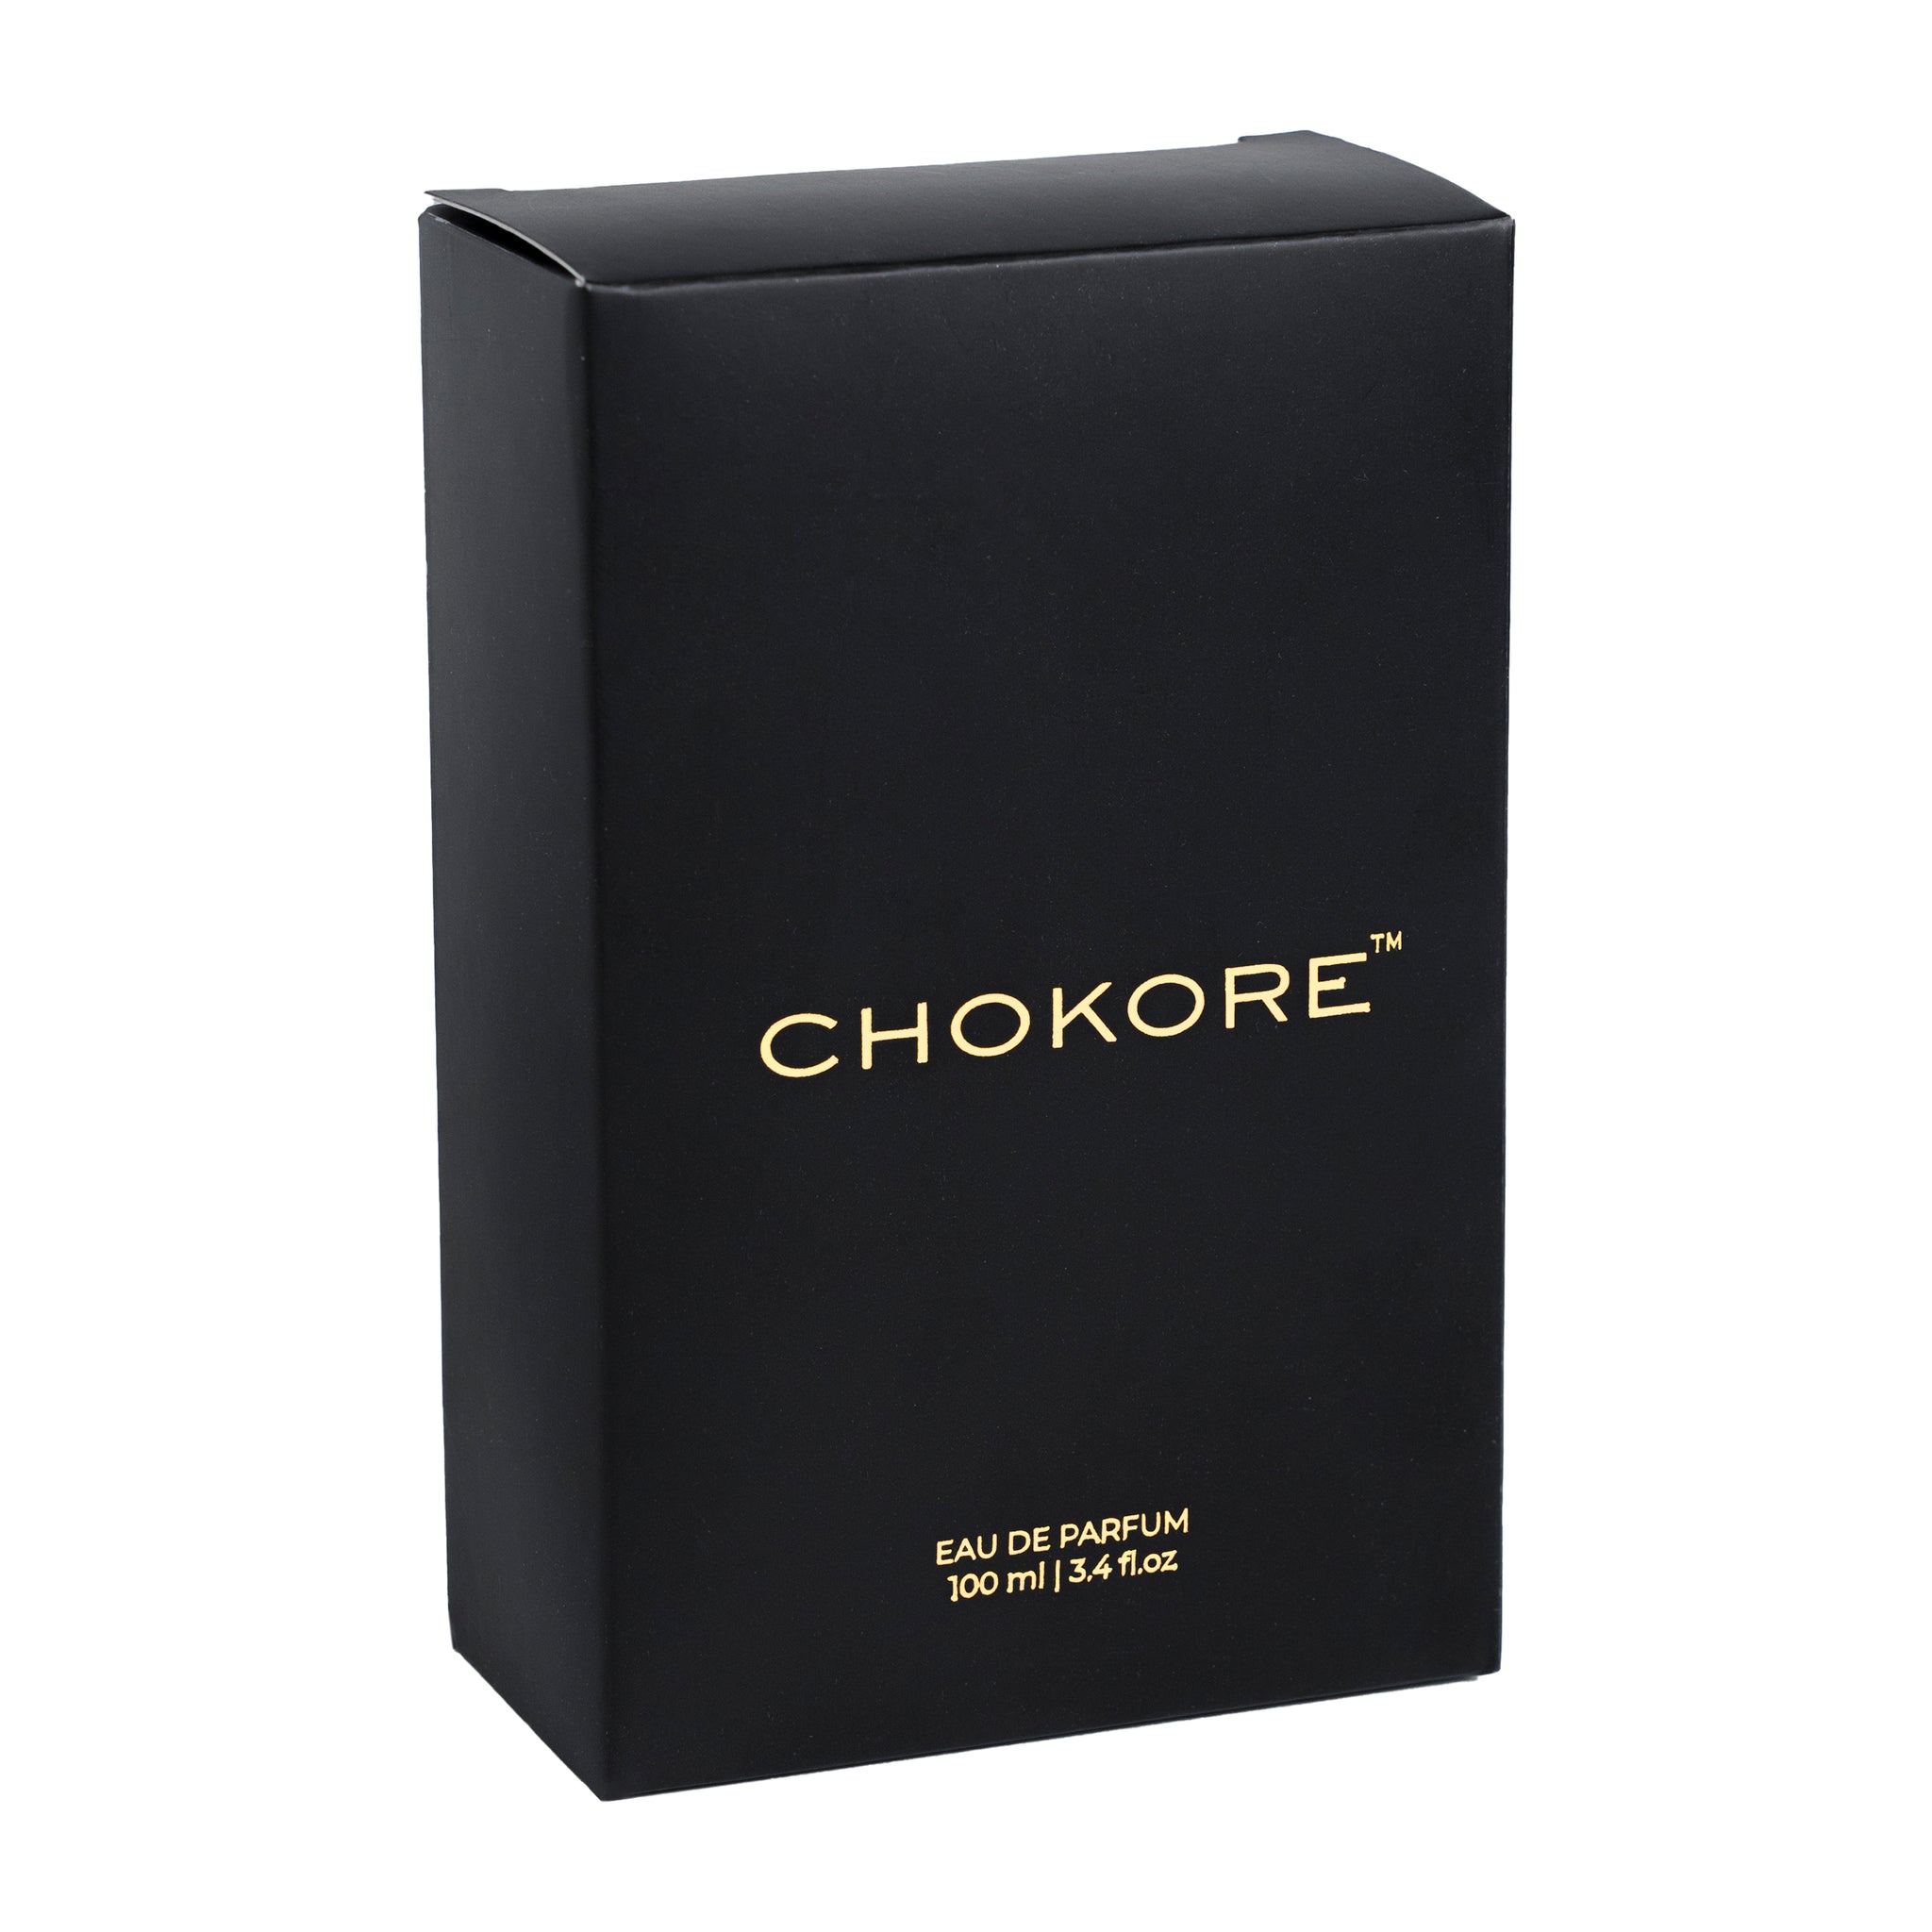 Closer - Perfume For Men | 100 ml